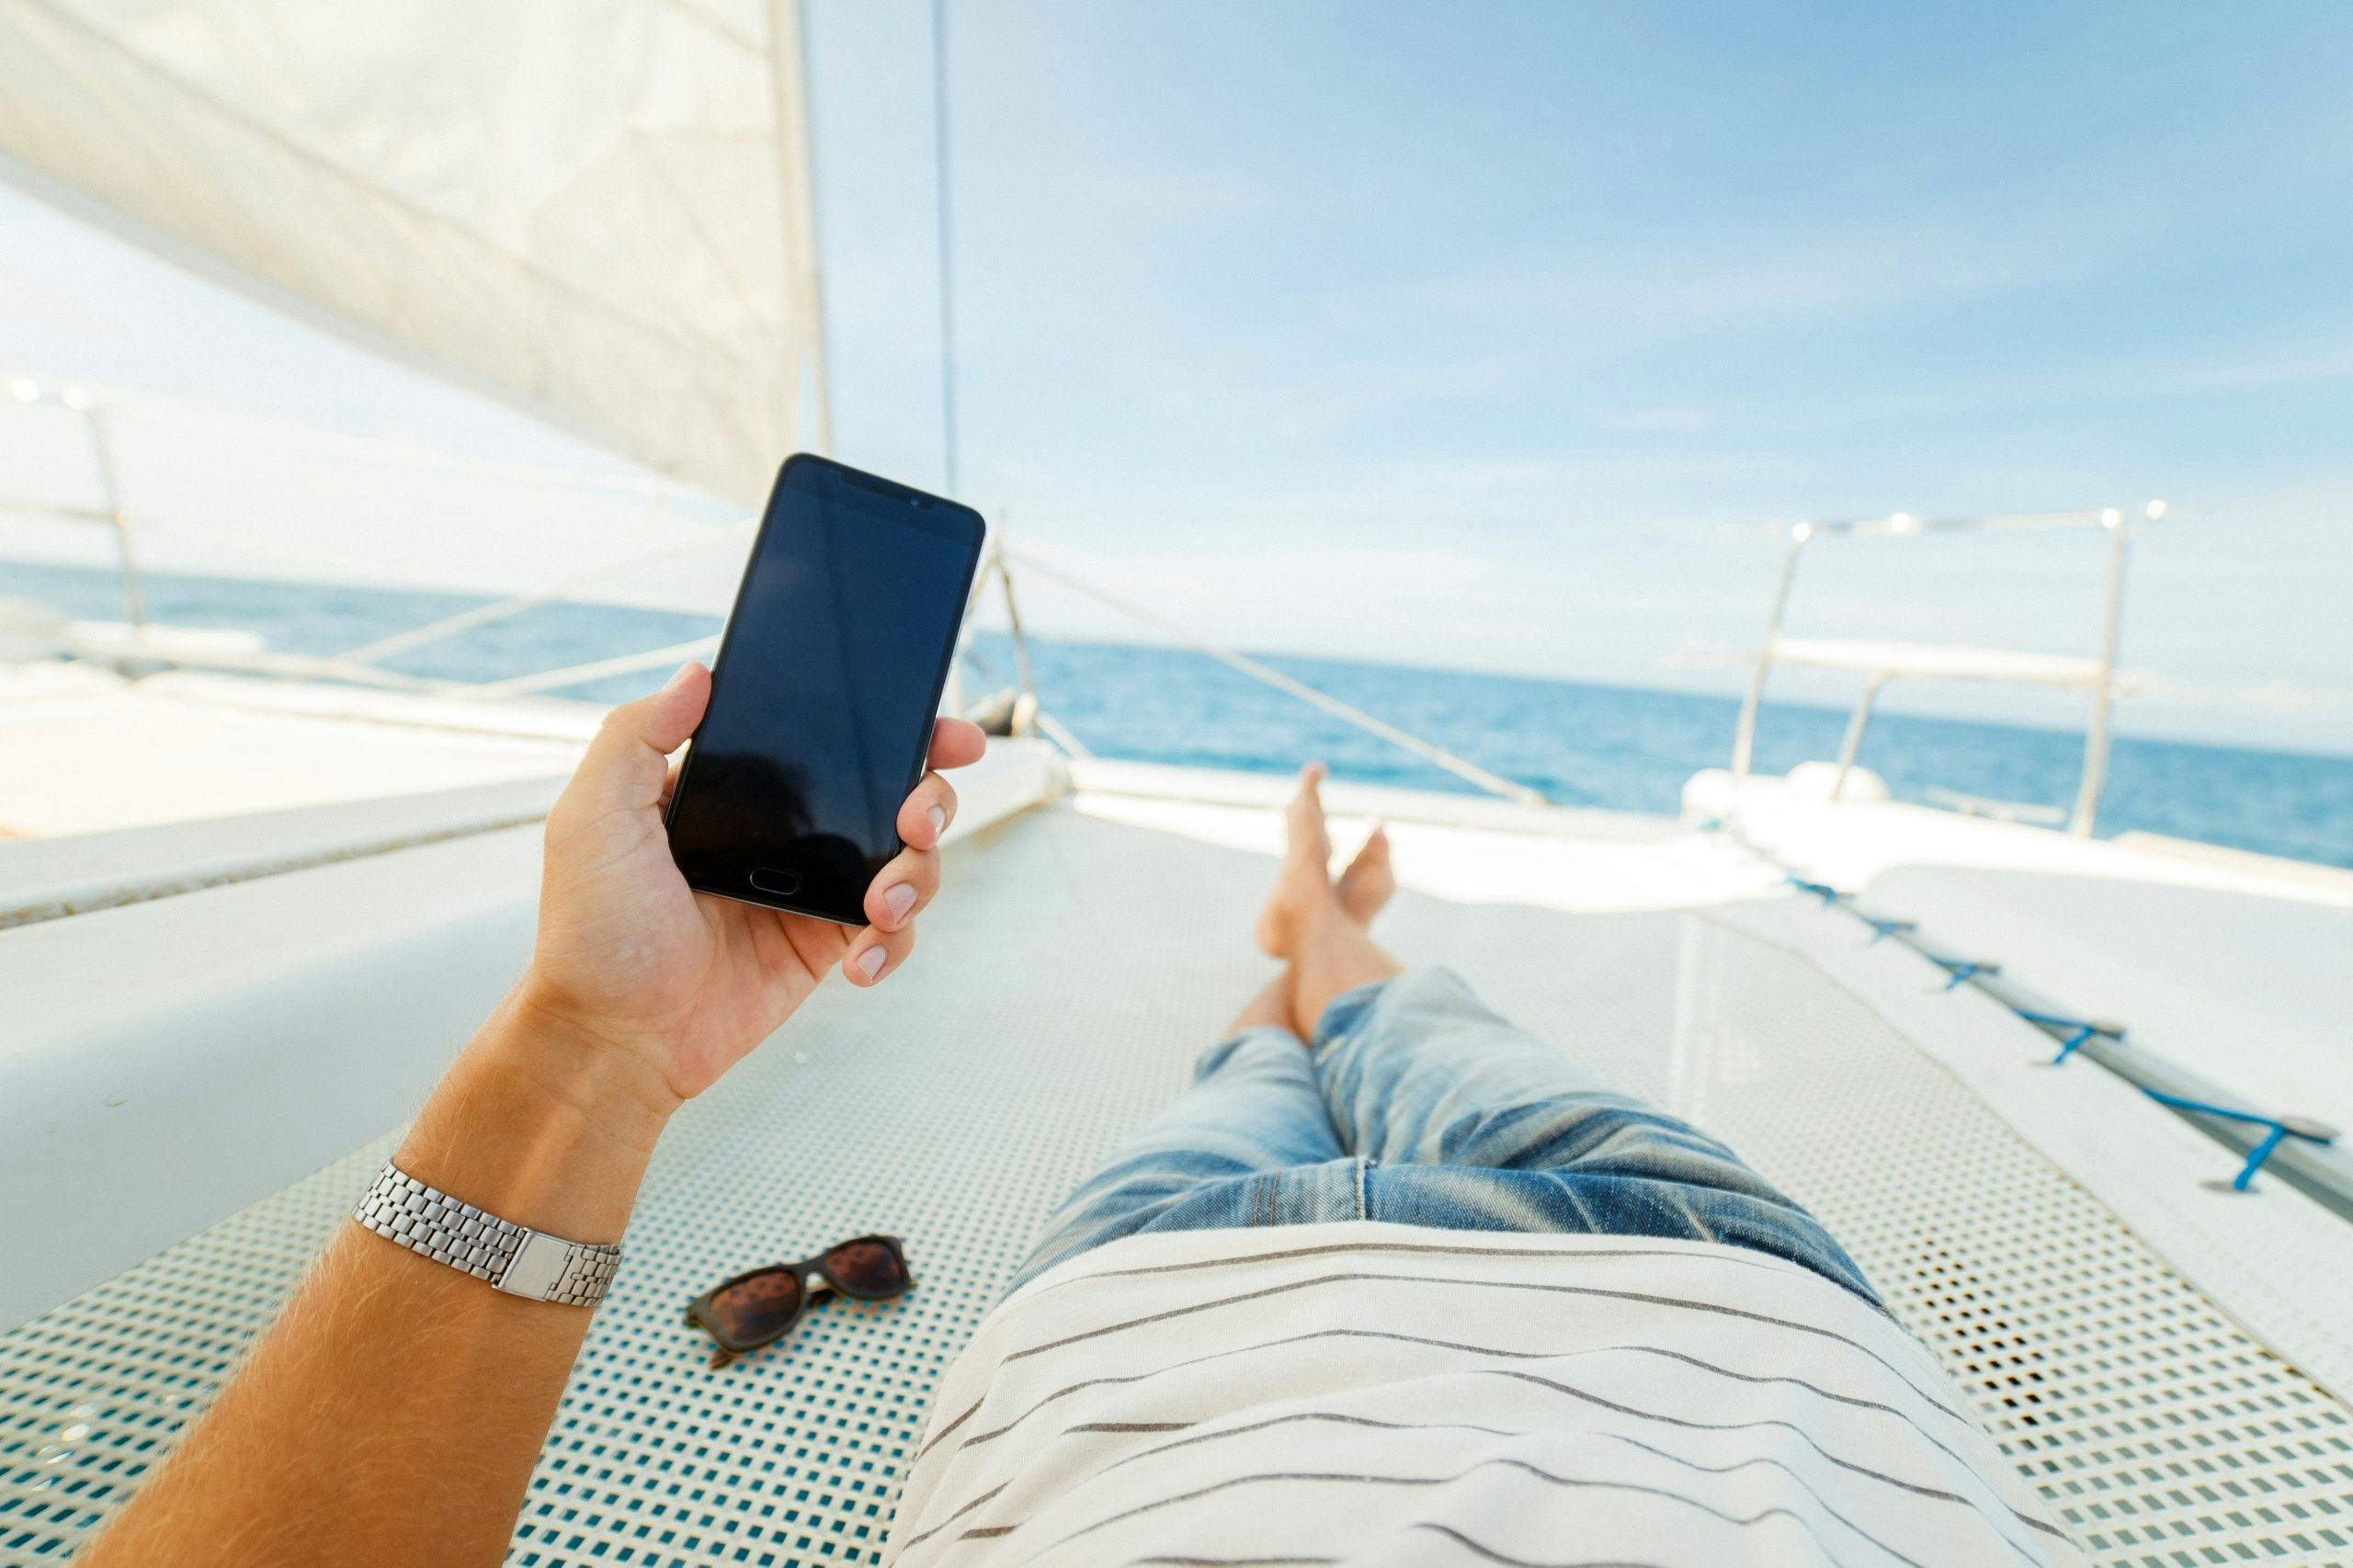 Mann slapper av på en seilbåt med mobilen i hånden, bildet er tatt fra personen sitt perspektiv